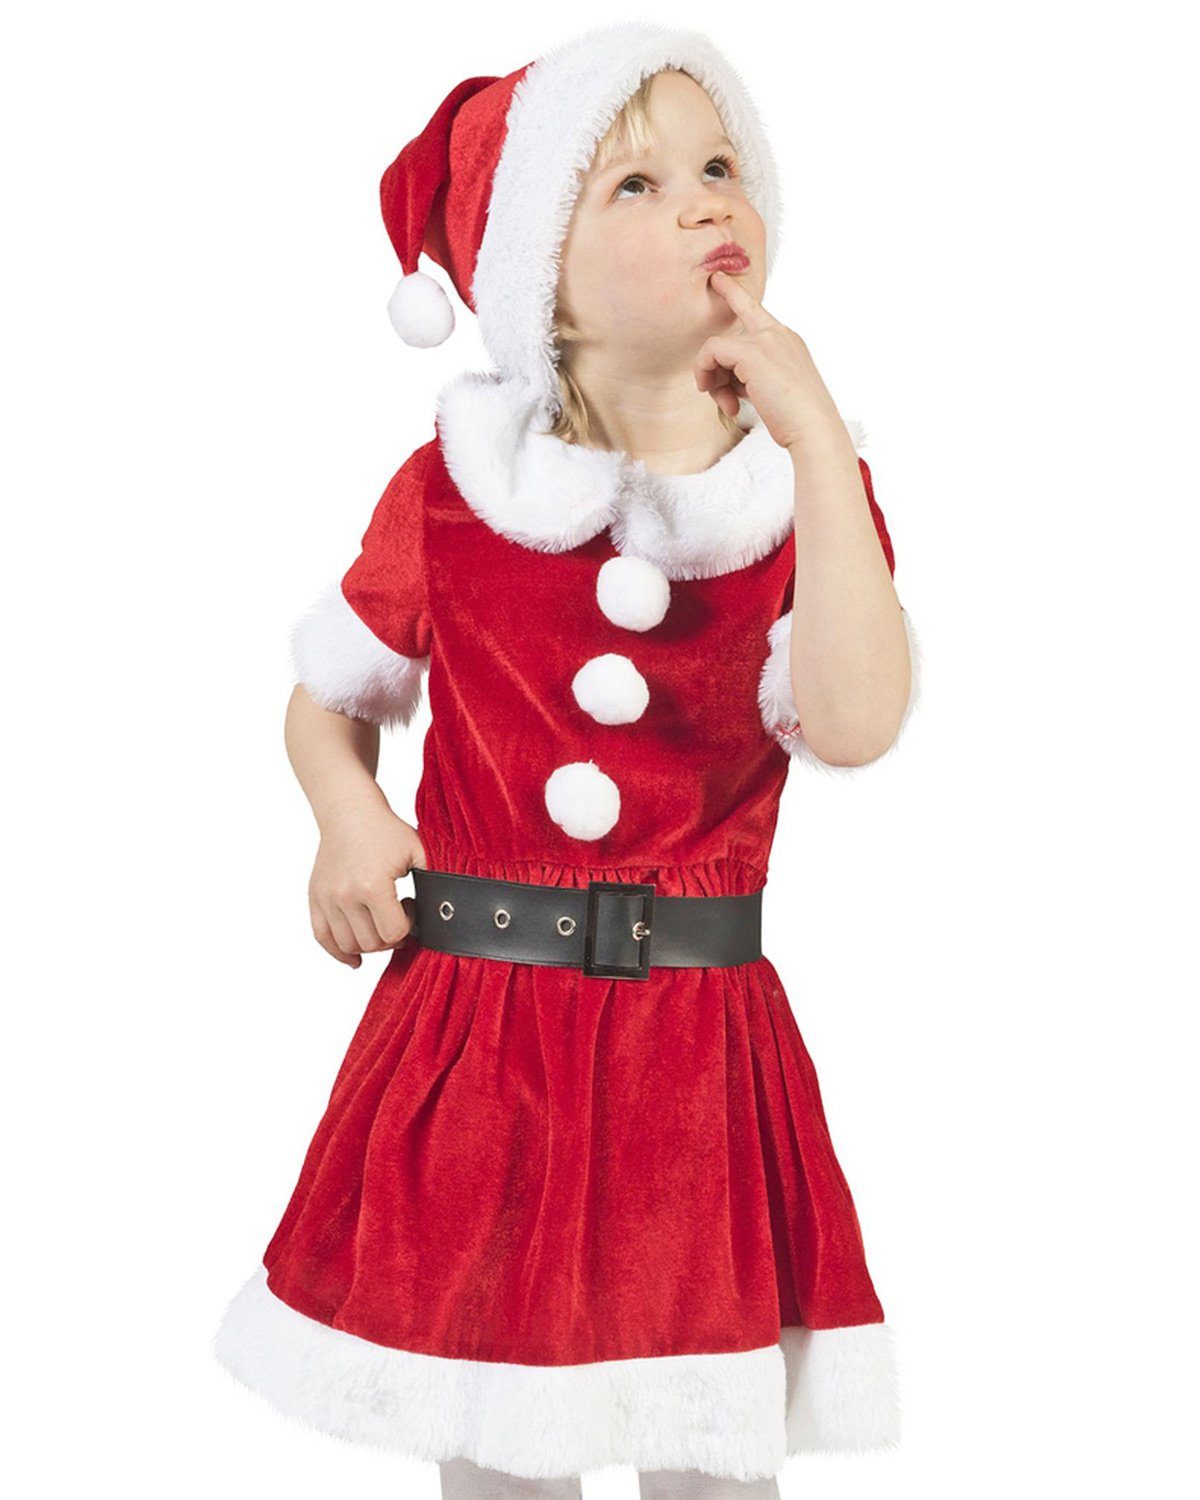 Funny Fashion Kostüm Weihnachtsmädchen 'Carol' für Kinder, Weihnachtsm